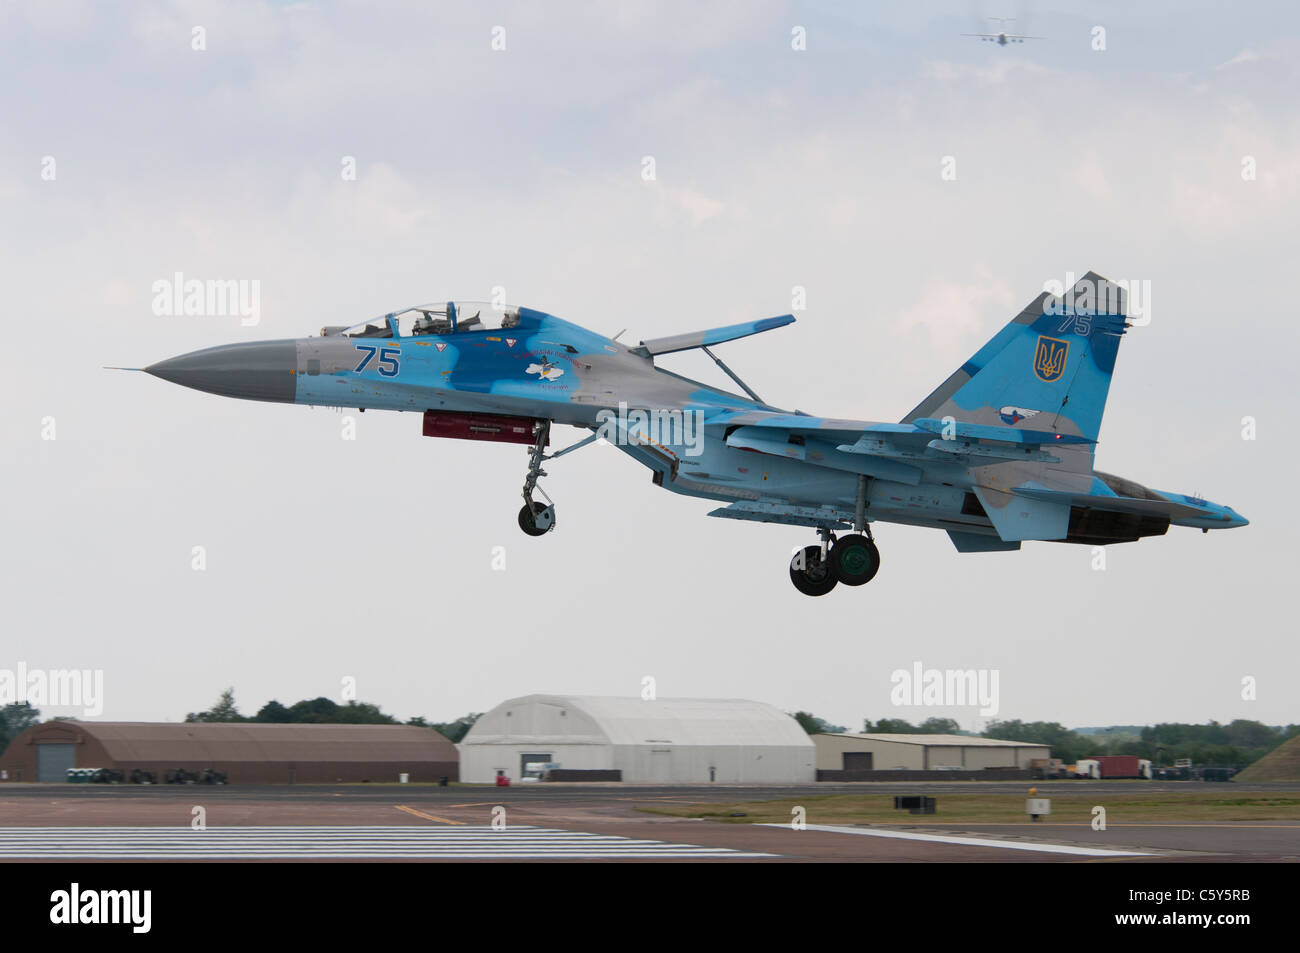 L'Armée de l'air ukrainienne Sukhoi Su-27UB chasseur de supériorité aérienne de la 831st Fighter Aviation Regiment atterrit à RAF Fairford Banque D'Images